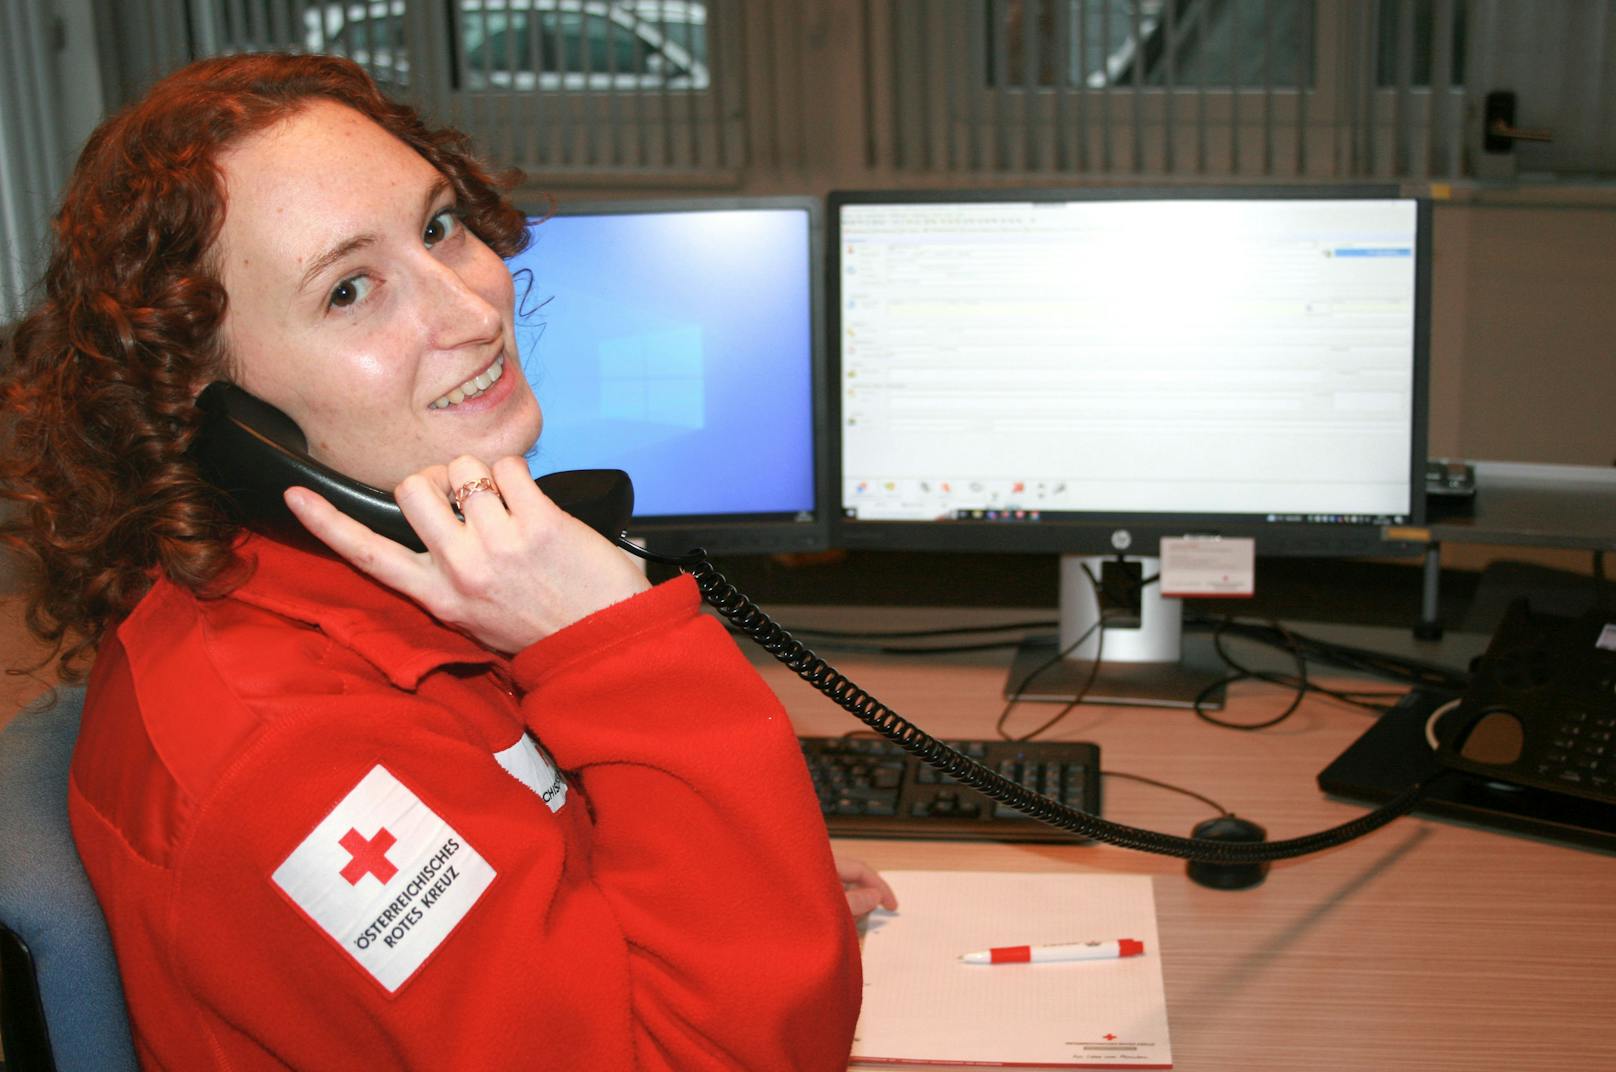 Das neue Service des Roten Kreuzes soll Sicherheit bieten.